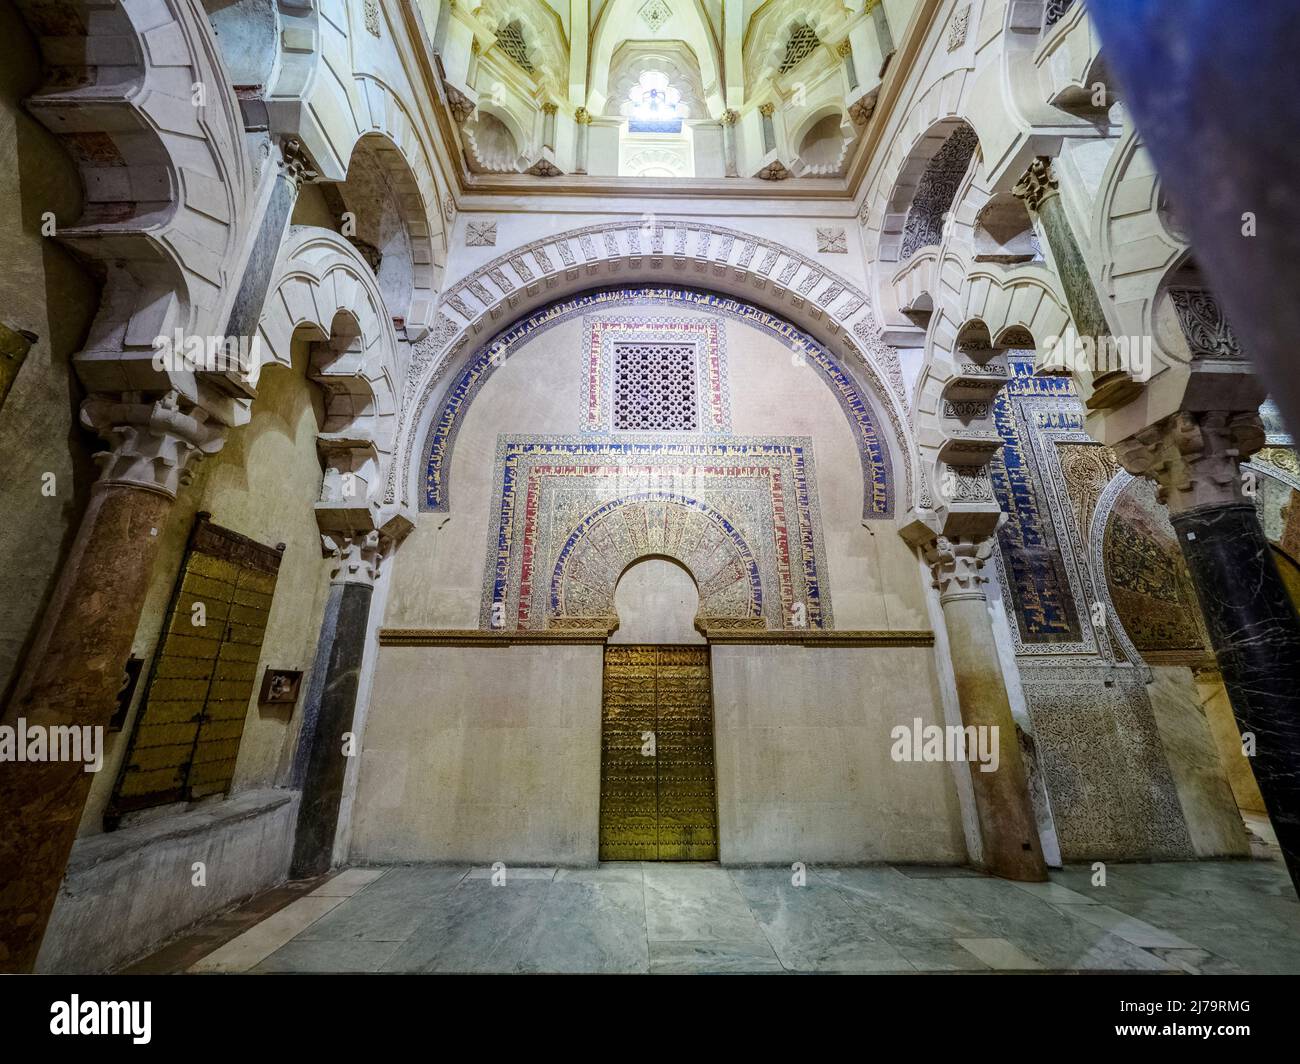 Östliche Tür im Maqsura-Bereich (links vom Mihrab), die zur Schatzkammer der Moschee führte - Mezquita-Catedral (große Moschee von Cordoba) - Cordoba, Spanien Stockfoto